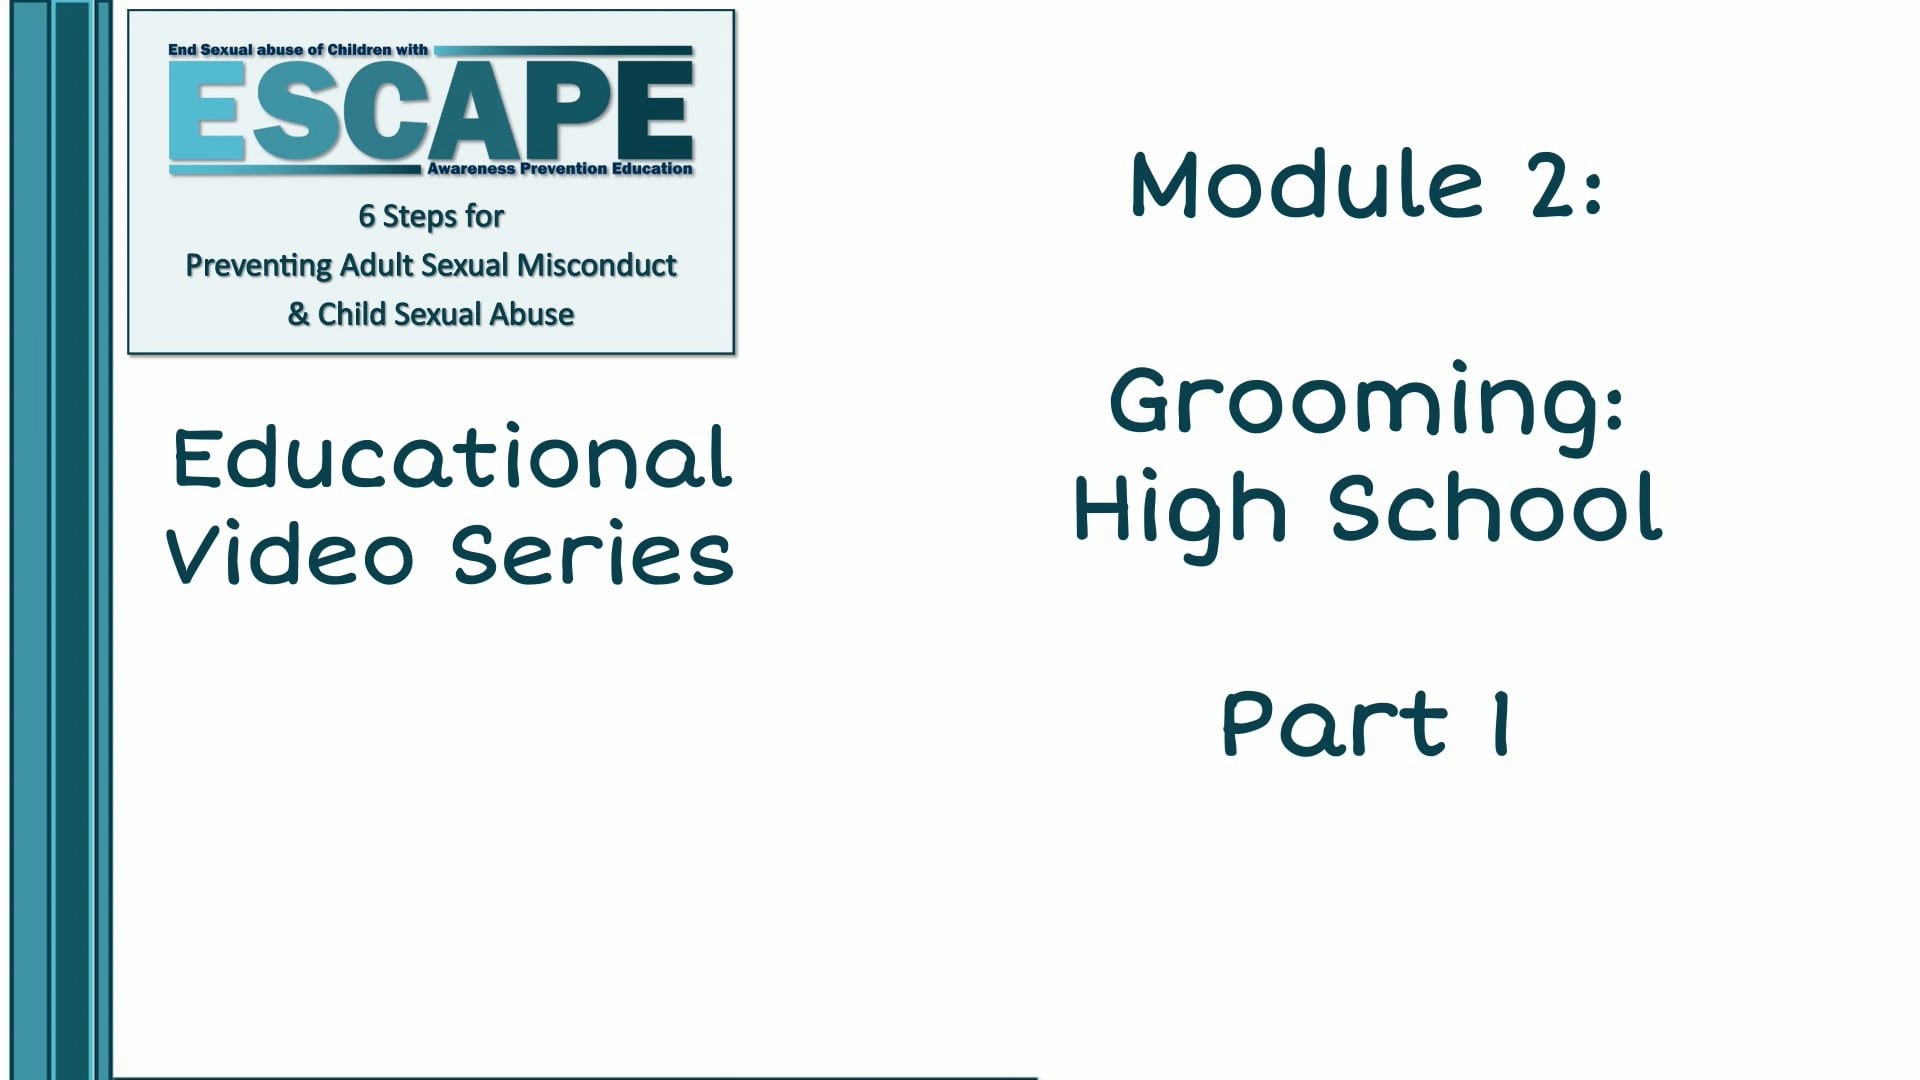 Grooming: High School